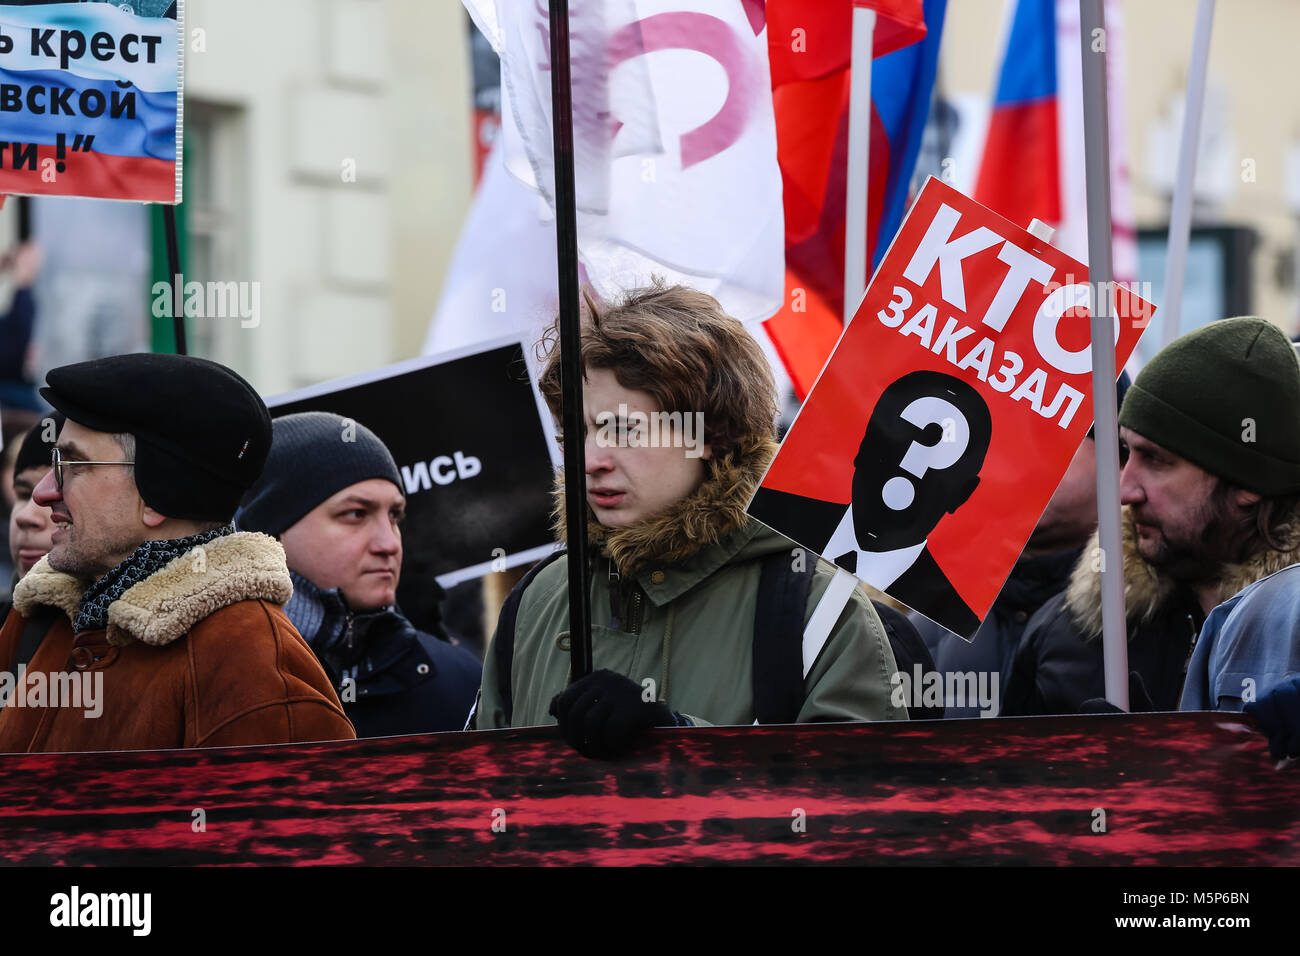 Moskau, der Russischen Föderation - 25. Februar 2018: Opposition März in Erinnerung an die Politiker Boris Nemzow vor 3 Jahren getötet Credit: Sergey Podkolzin/Alamy leben Nachrichten Stockfoto